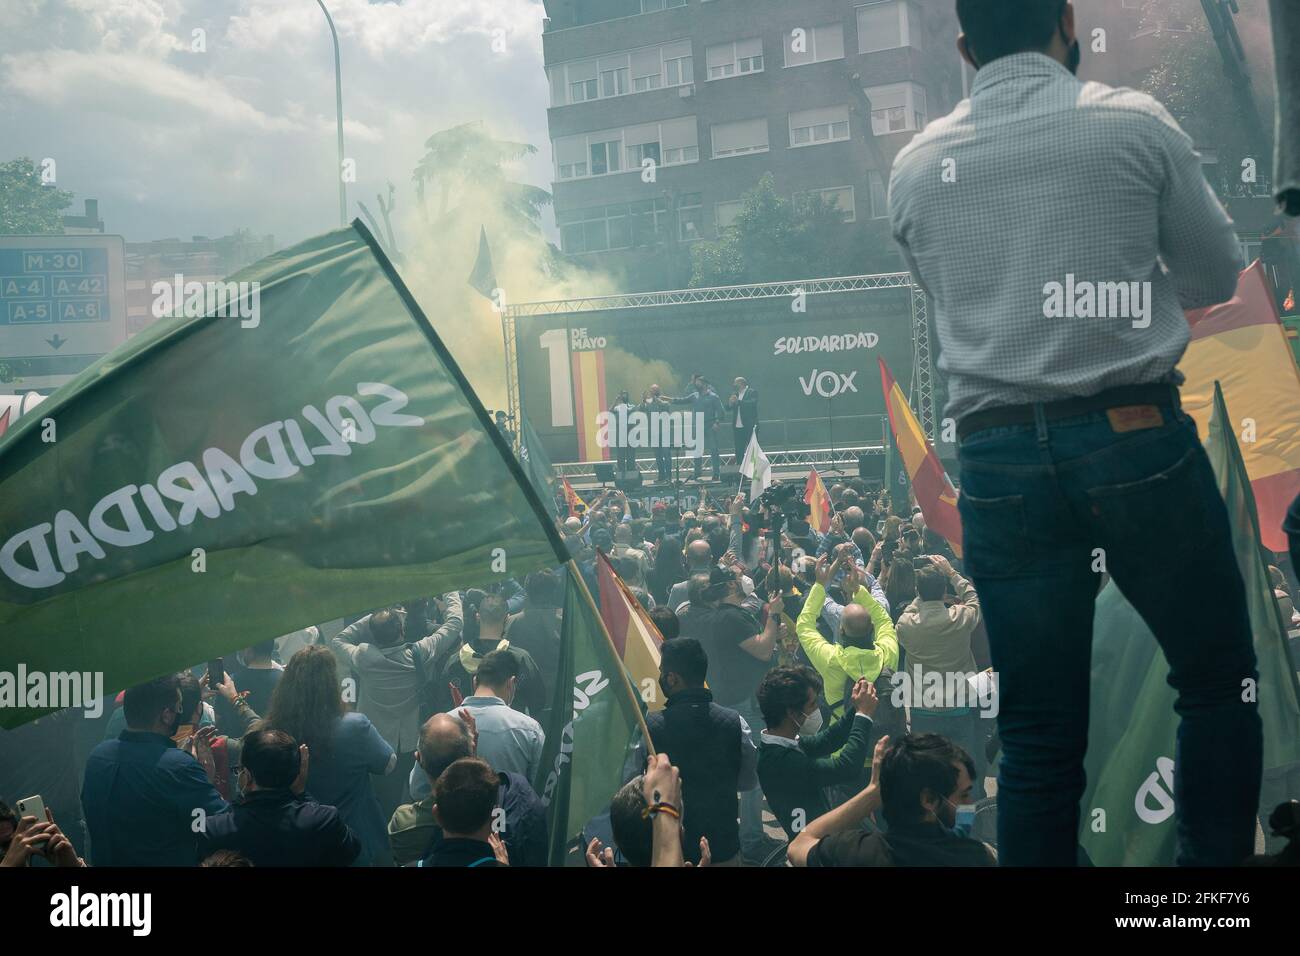 Les fans de VOX applaudissent au milieu de la fumée des fusées de la Plaza Conde de Casal.dans le cadre de la Journée internationale du travail du 1er mai, le parti d'extrême-droite espagnol VOX lance le syndicat "Solidaridad". Avec des discours anti-communistes, anti-écologiques, anti-illégaux, anti-féministes et ultra-nationalistes, Santiago Abascal, président de VOX, Rocio Monasterio, candidat aux élections de la Communauté de Madrid, et Rodrigo Alonso, secrétaire général du syndicat Solidaridad ont participé à la réunion sur la Plaza de Comte Casal. La loi a lieu quelques jours avant les élections Banque D'Images